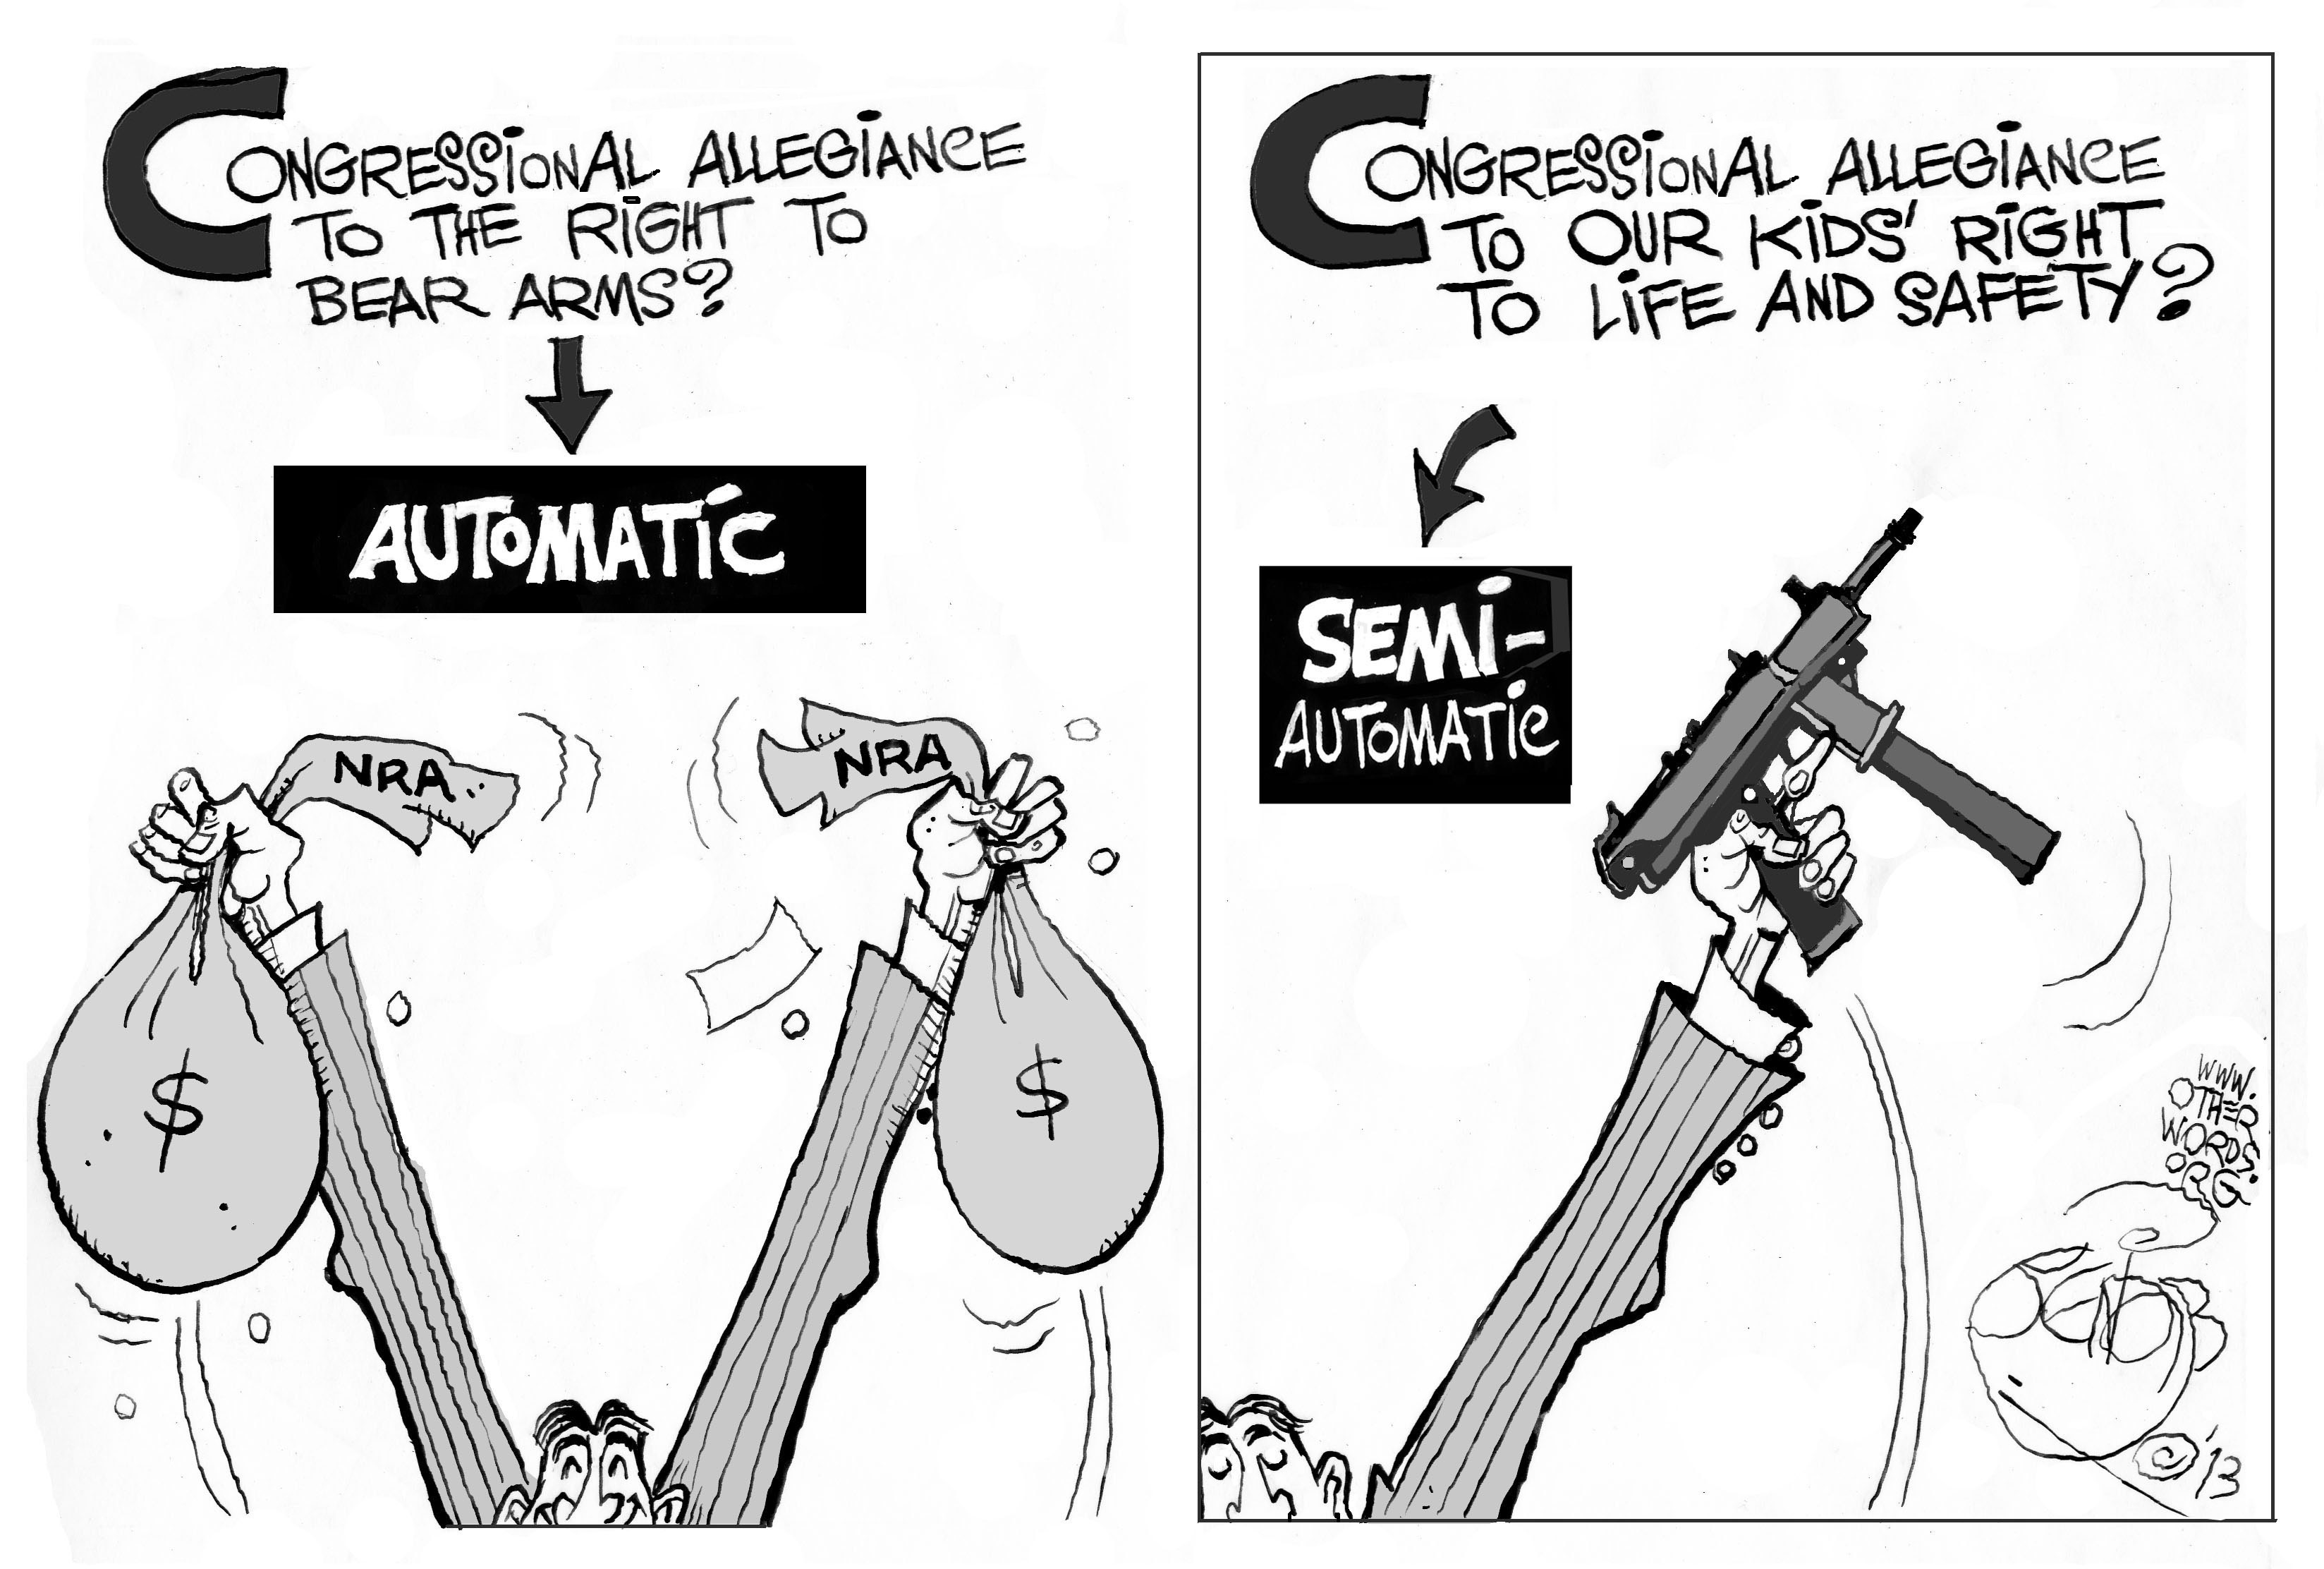 nra-congress-guns-cartoon.jpg